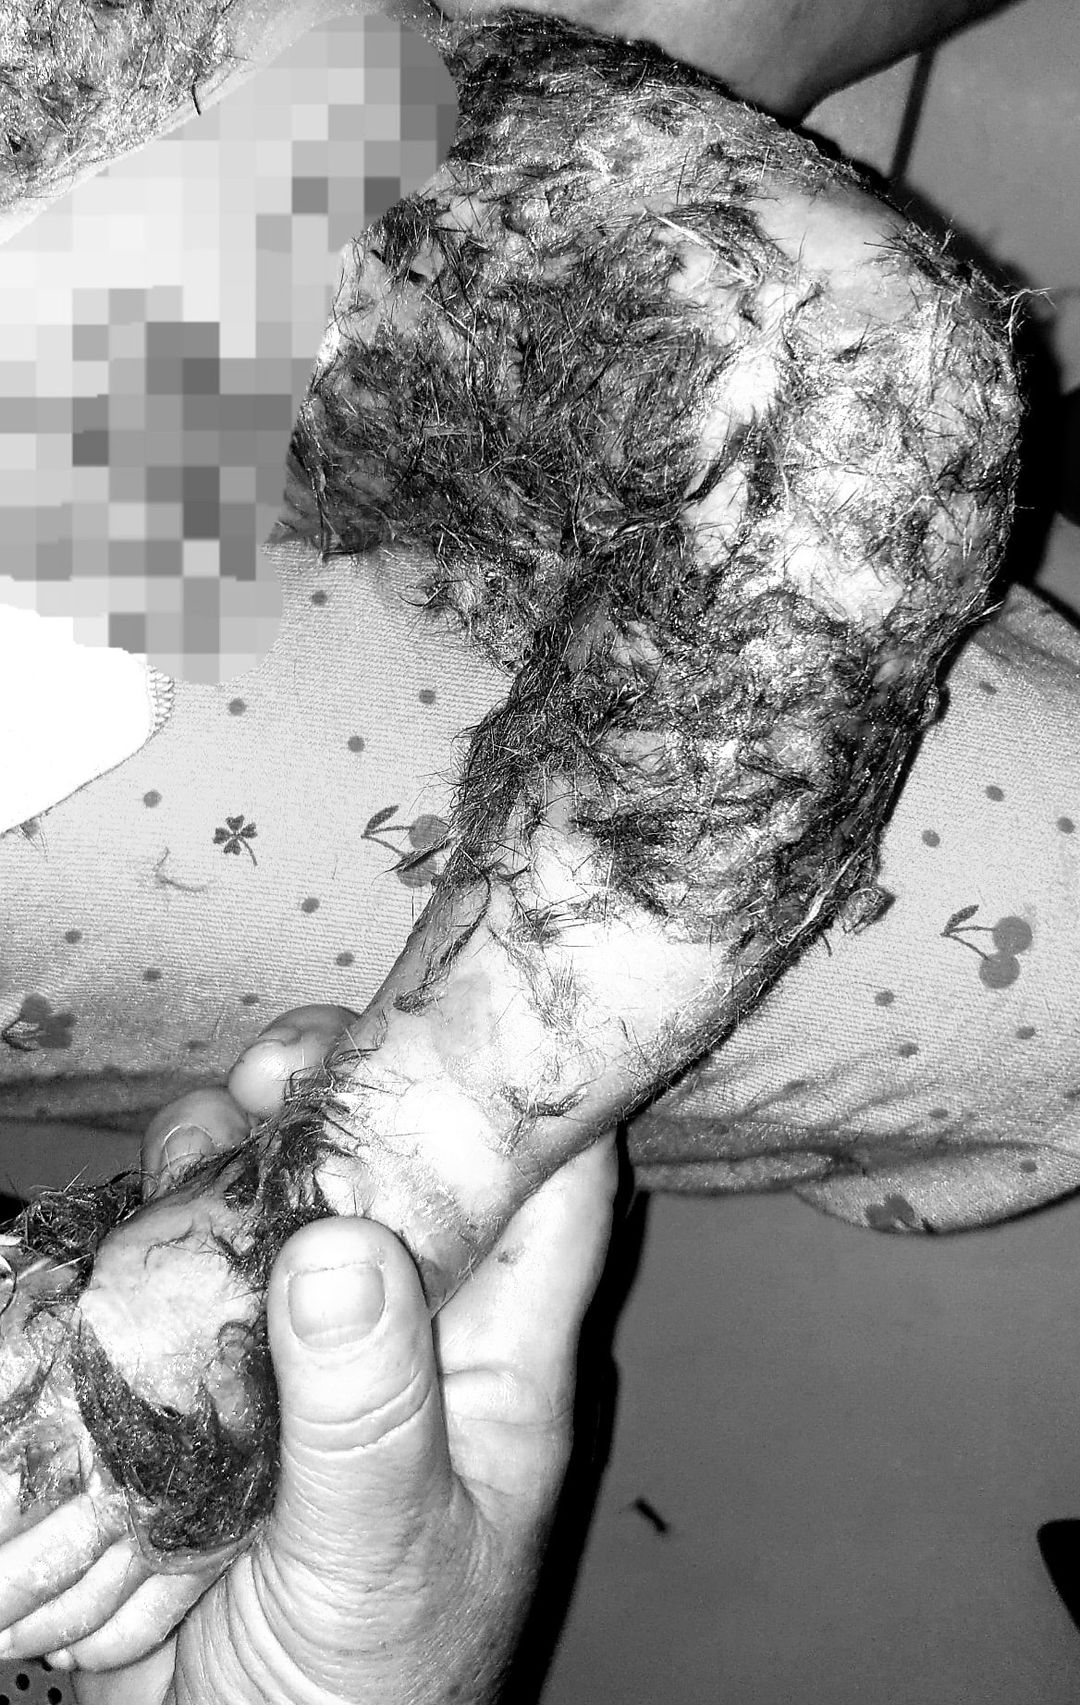 Thầy lang đắp lông chó để chữa bỏng cho bé 8 tháng tuổi khiến nguy cơ nhiễm trùng